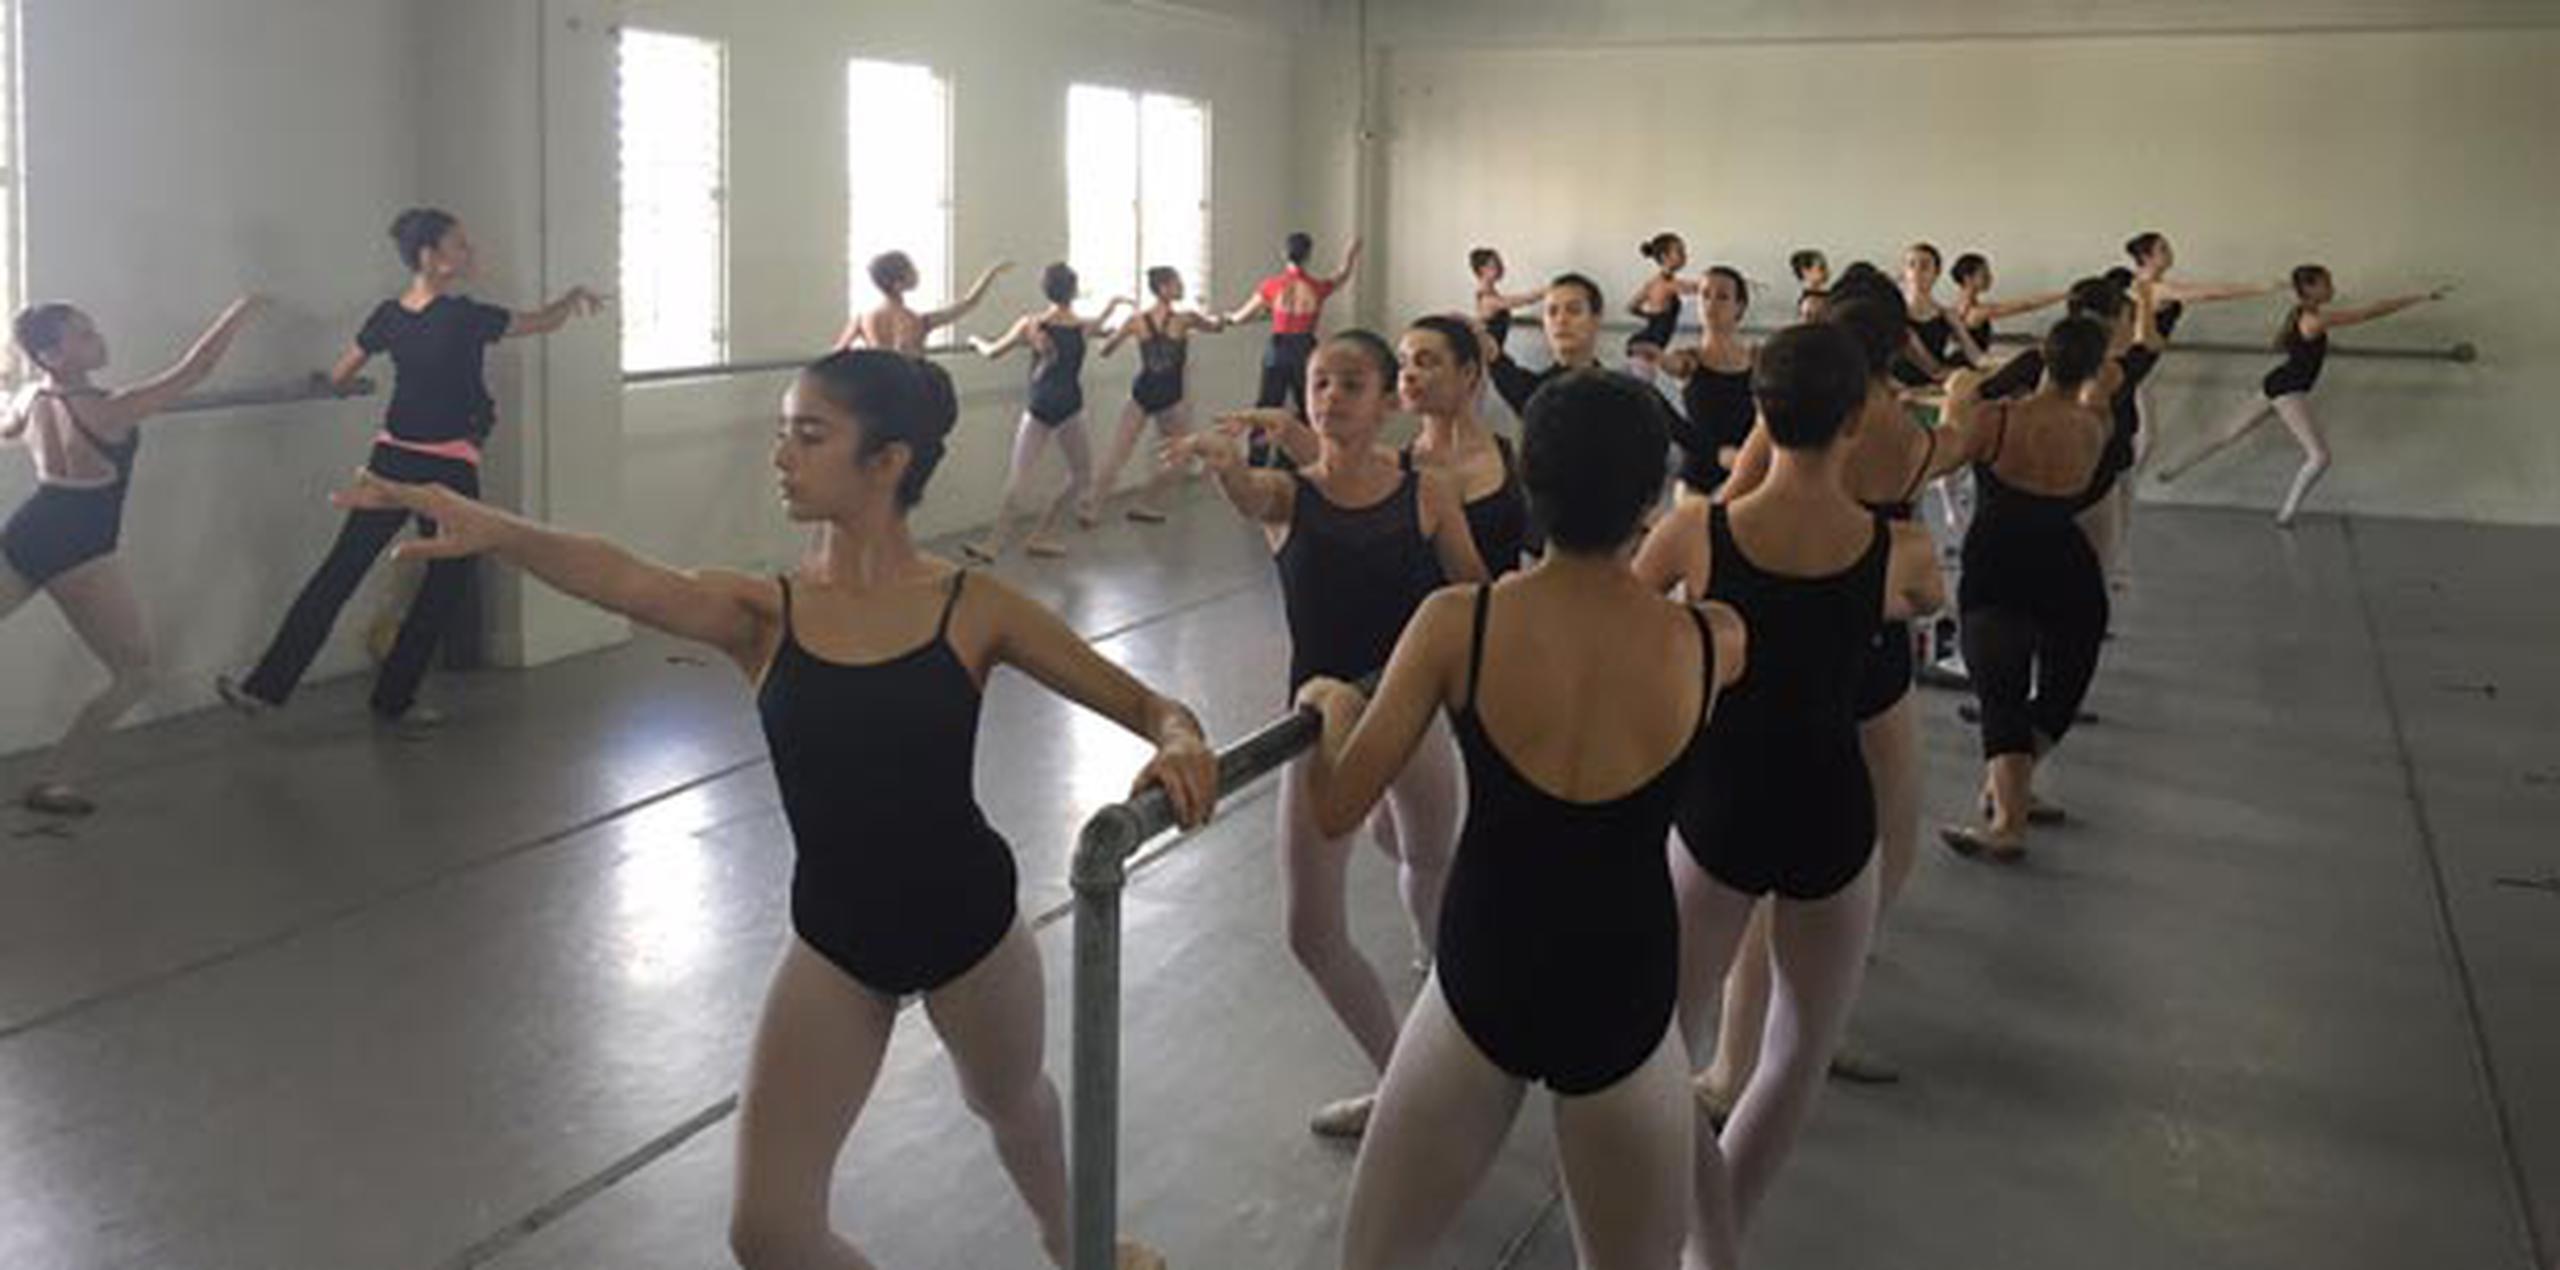 Durante el campamento, los bailarines de nivel principiante hasta profesional tendrán la oportunidad de trabajar en el desarrollo de sus destrezas de ballet. (Suministrada)